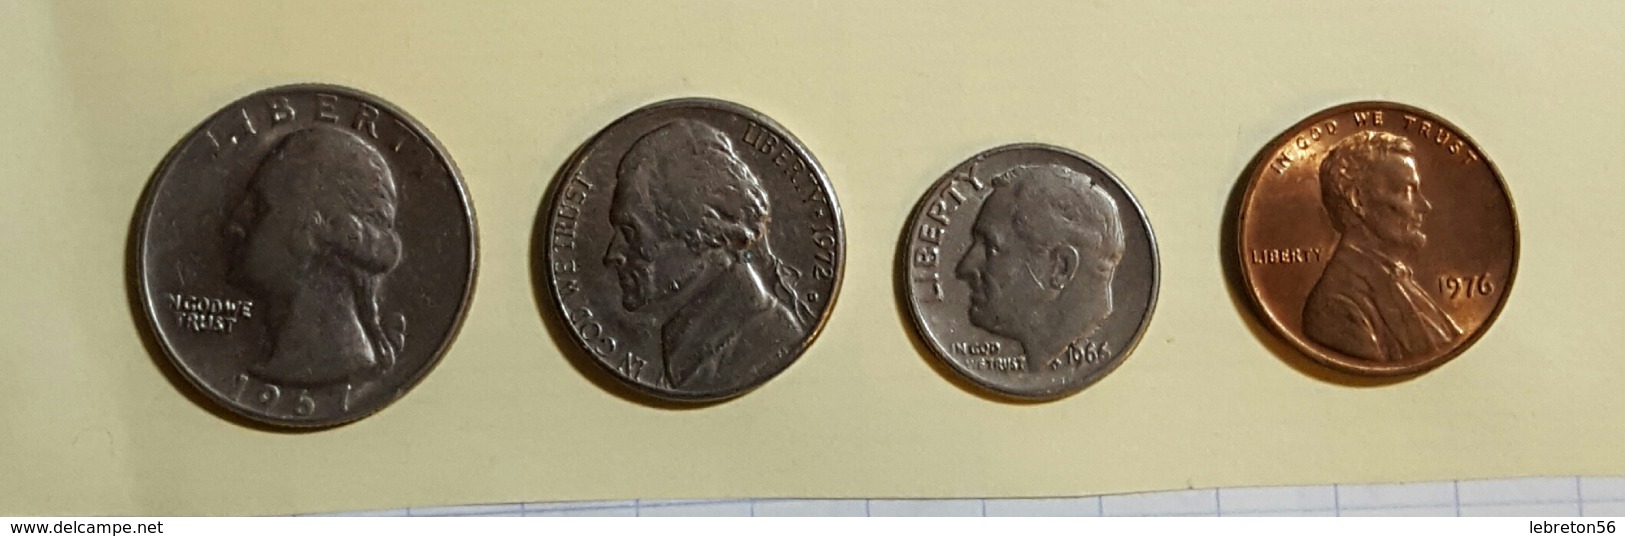 Etats Unis Quater Dollards 1967 Five Cent 1972 One Dime 1966 On Cent1976 Voir Les Deux Photos - Vrac - Monnaies